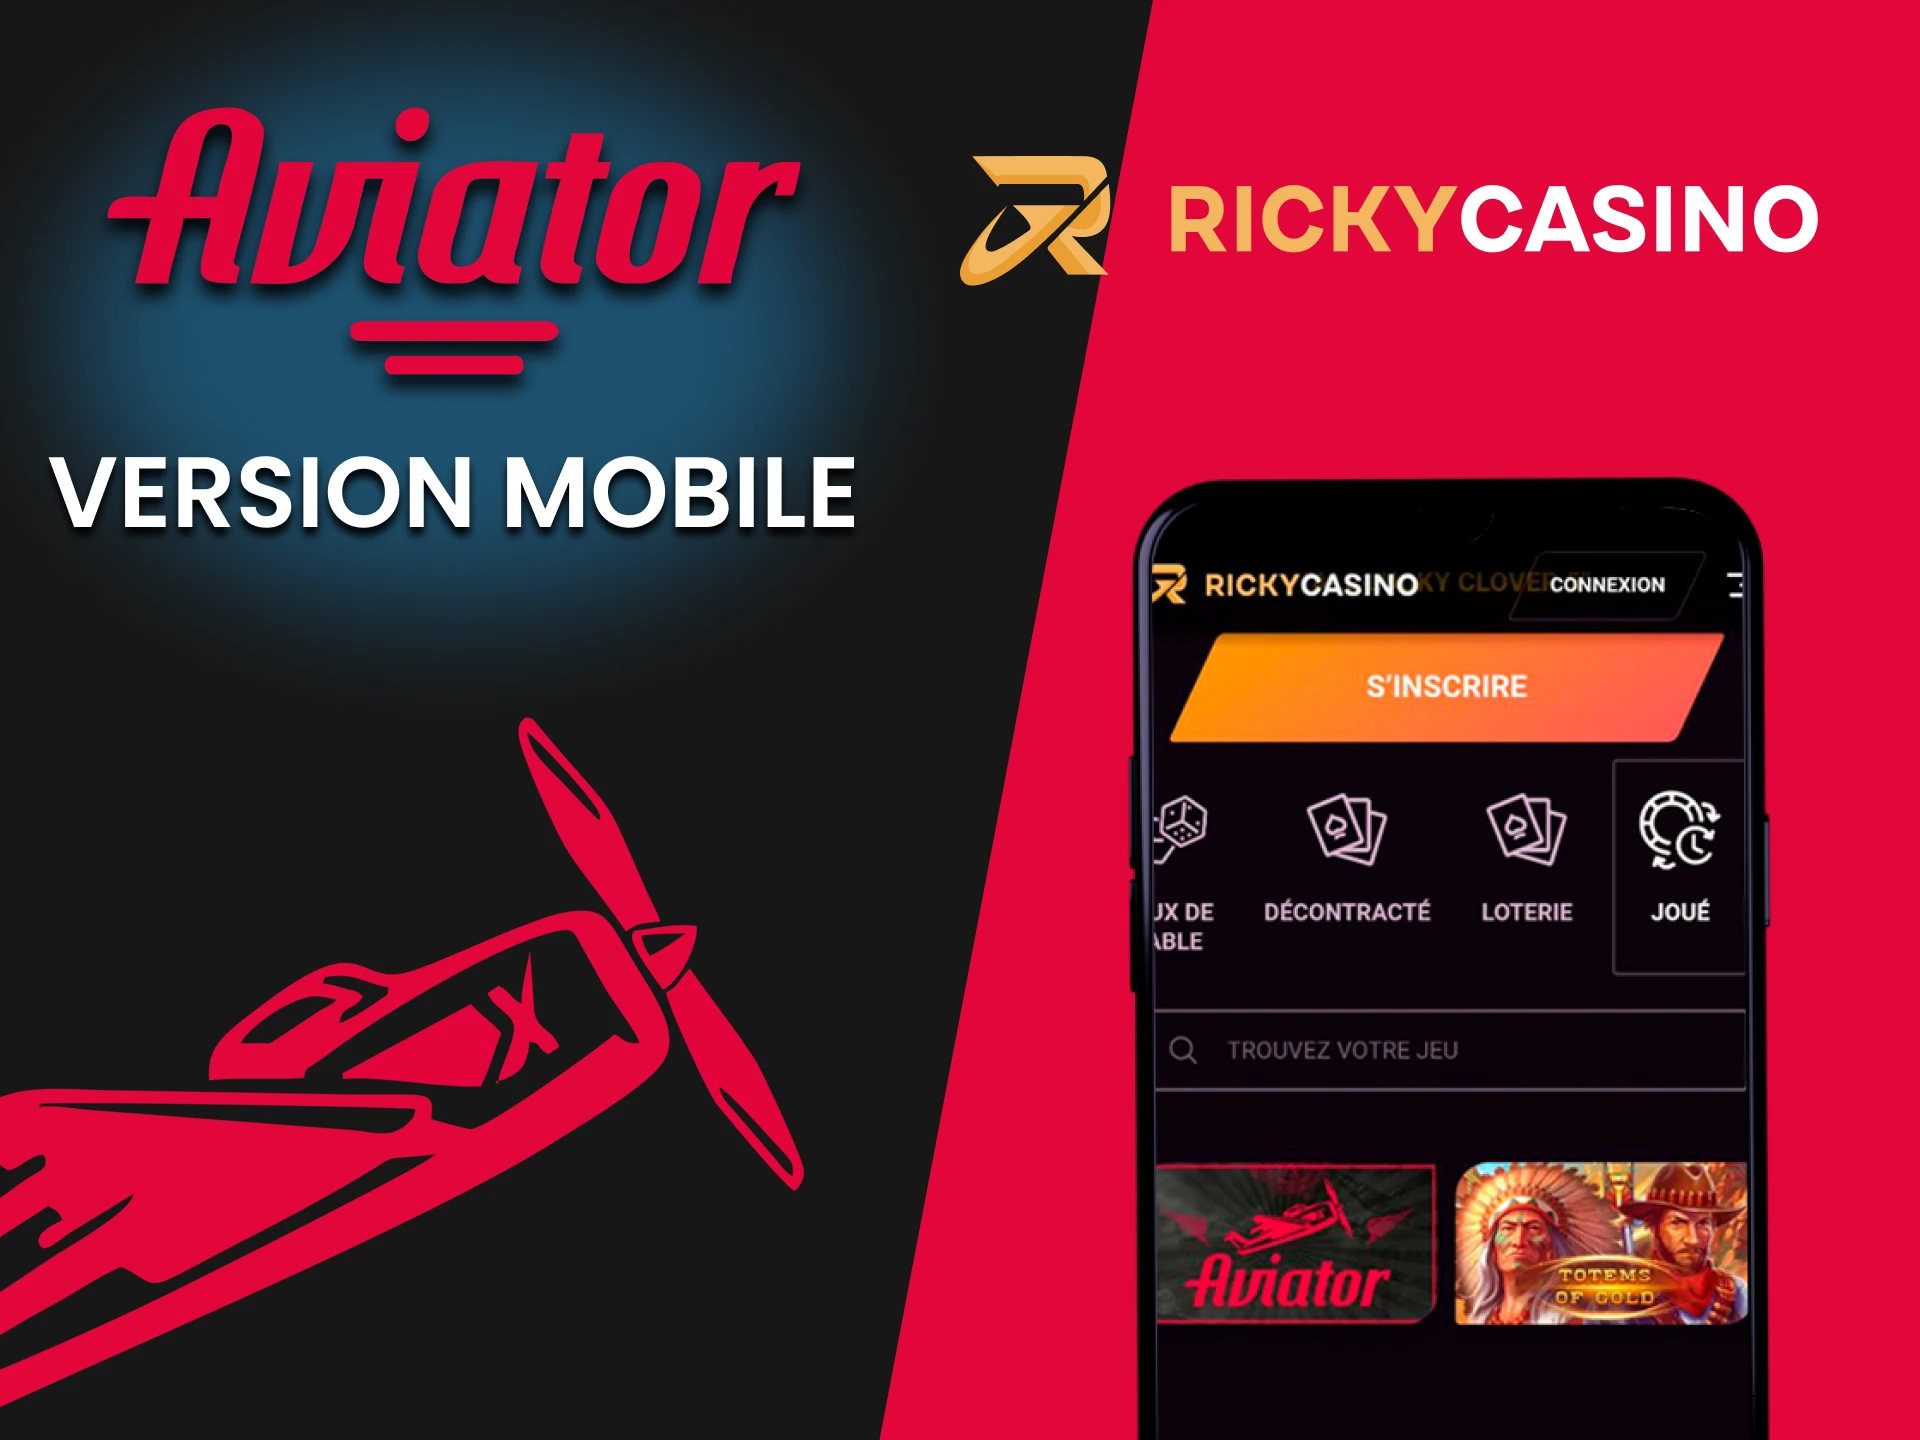 Essayez le jeu Aviator dans la version mobile de Ricky Casino.